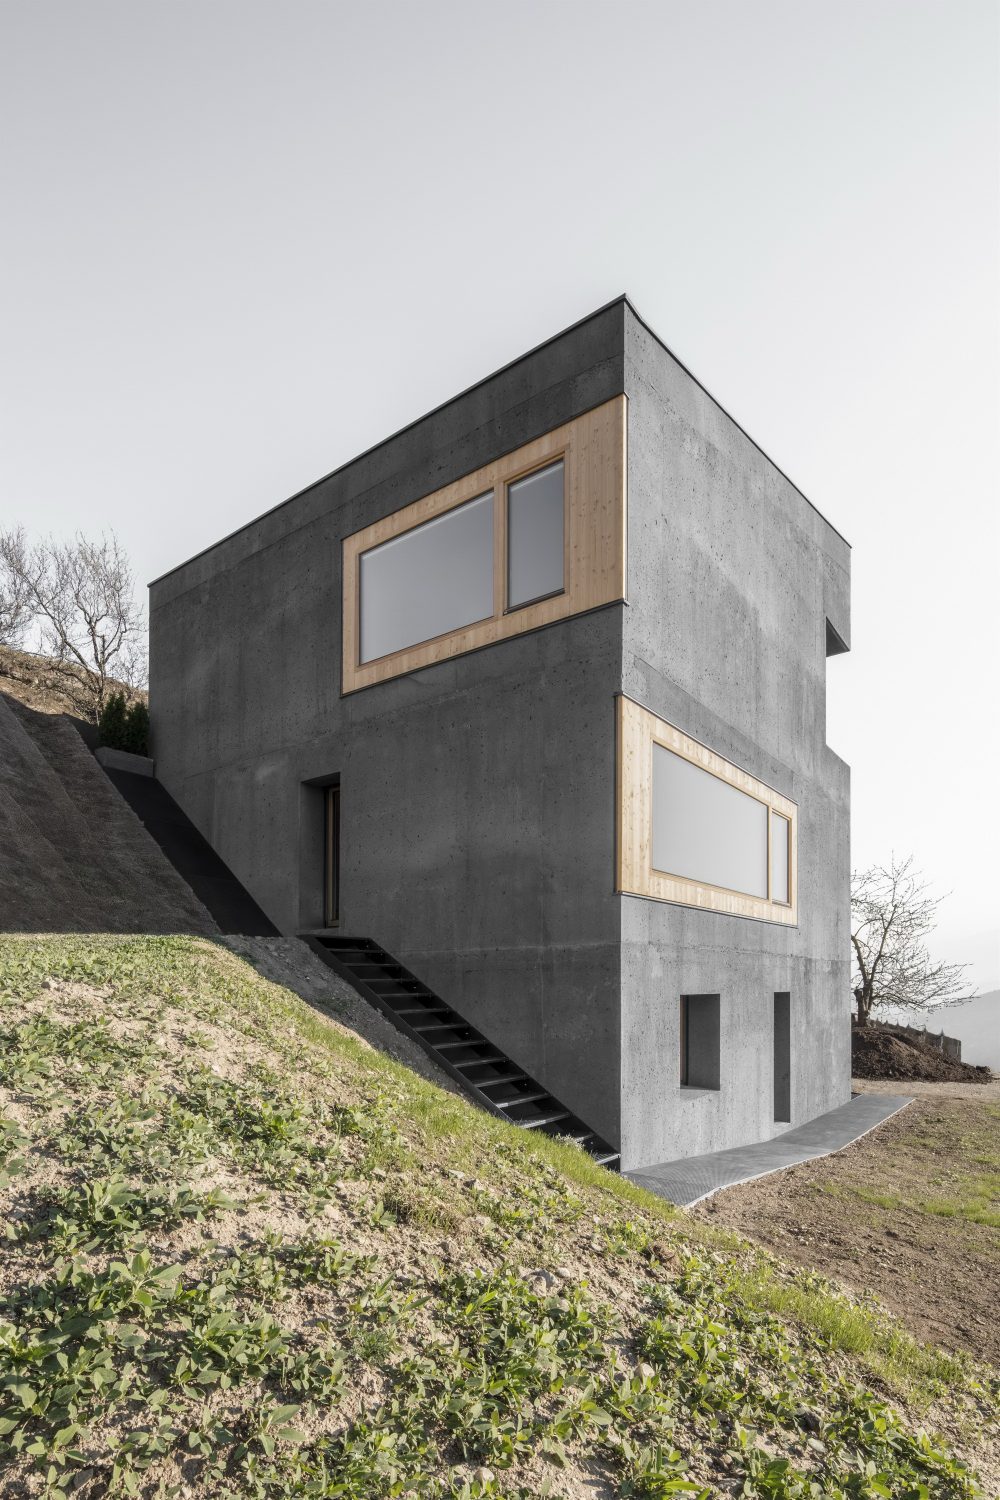 Habitat Andergassen Urthaler by Architekt Andreas Gruber